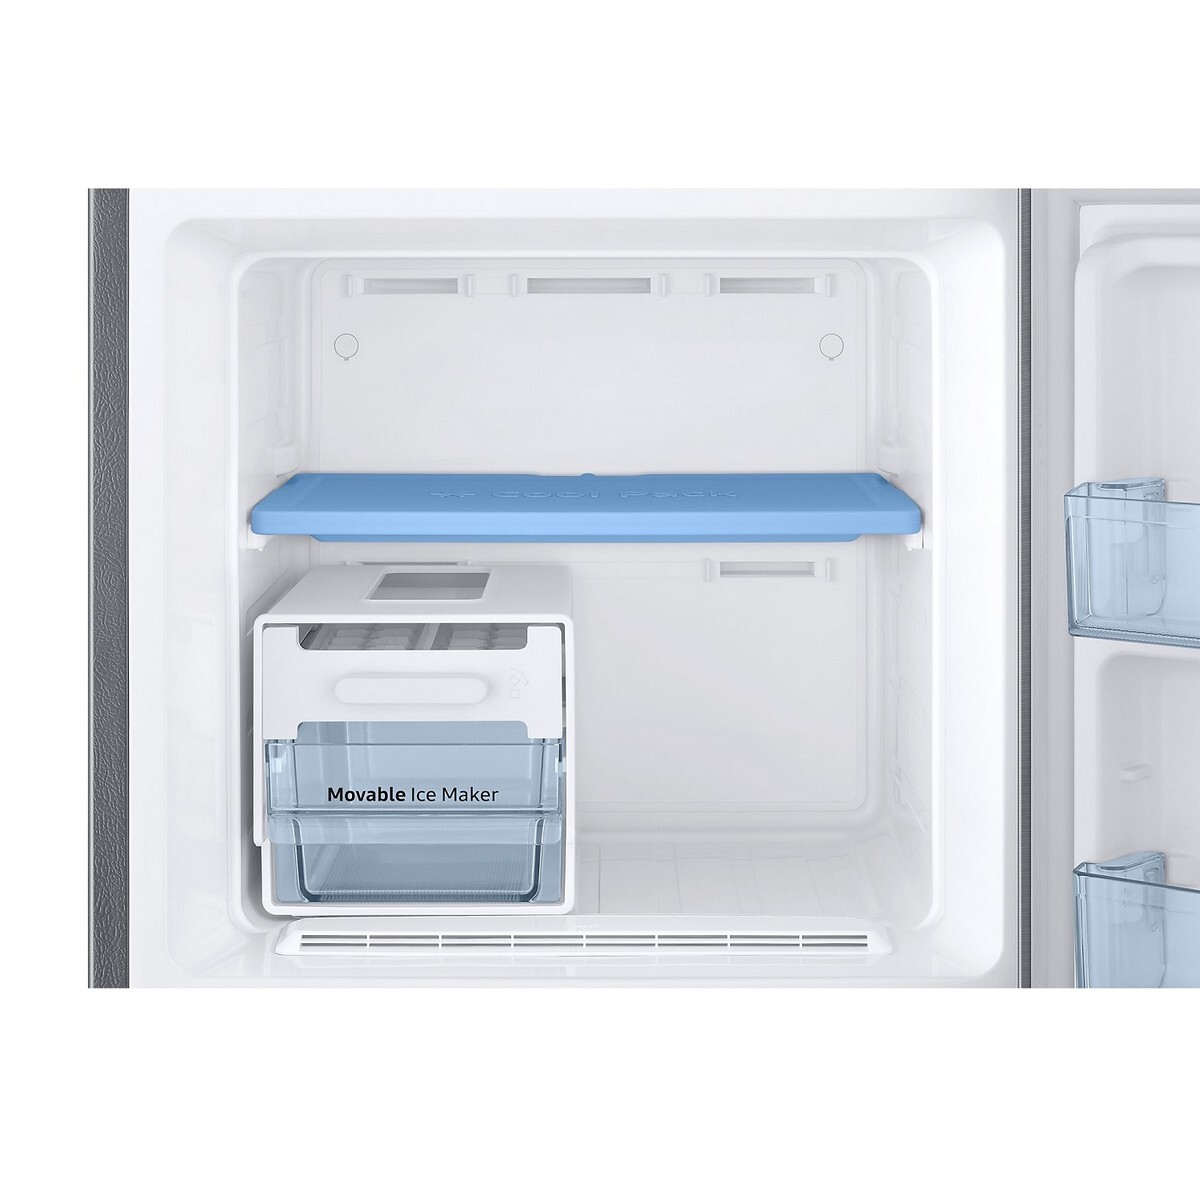 Samsung Double Door Refrigerator Frost Free RT30C3433S9 256L